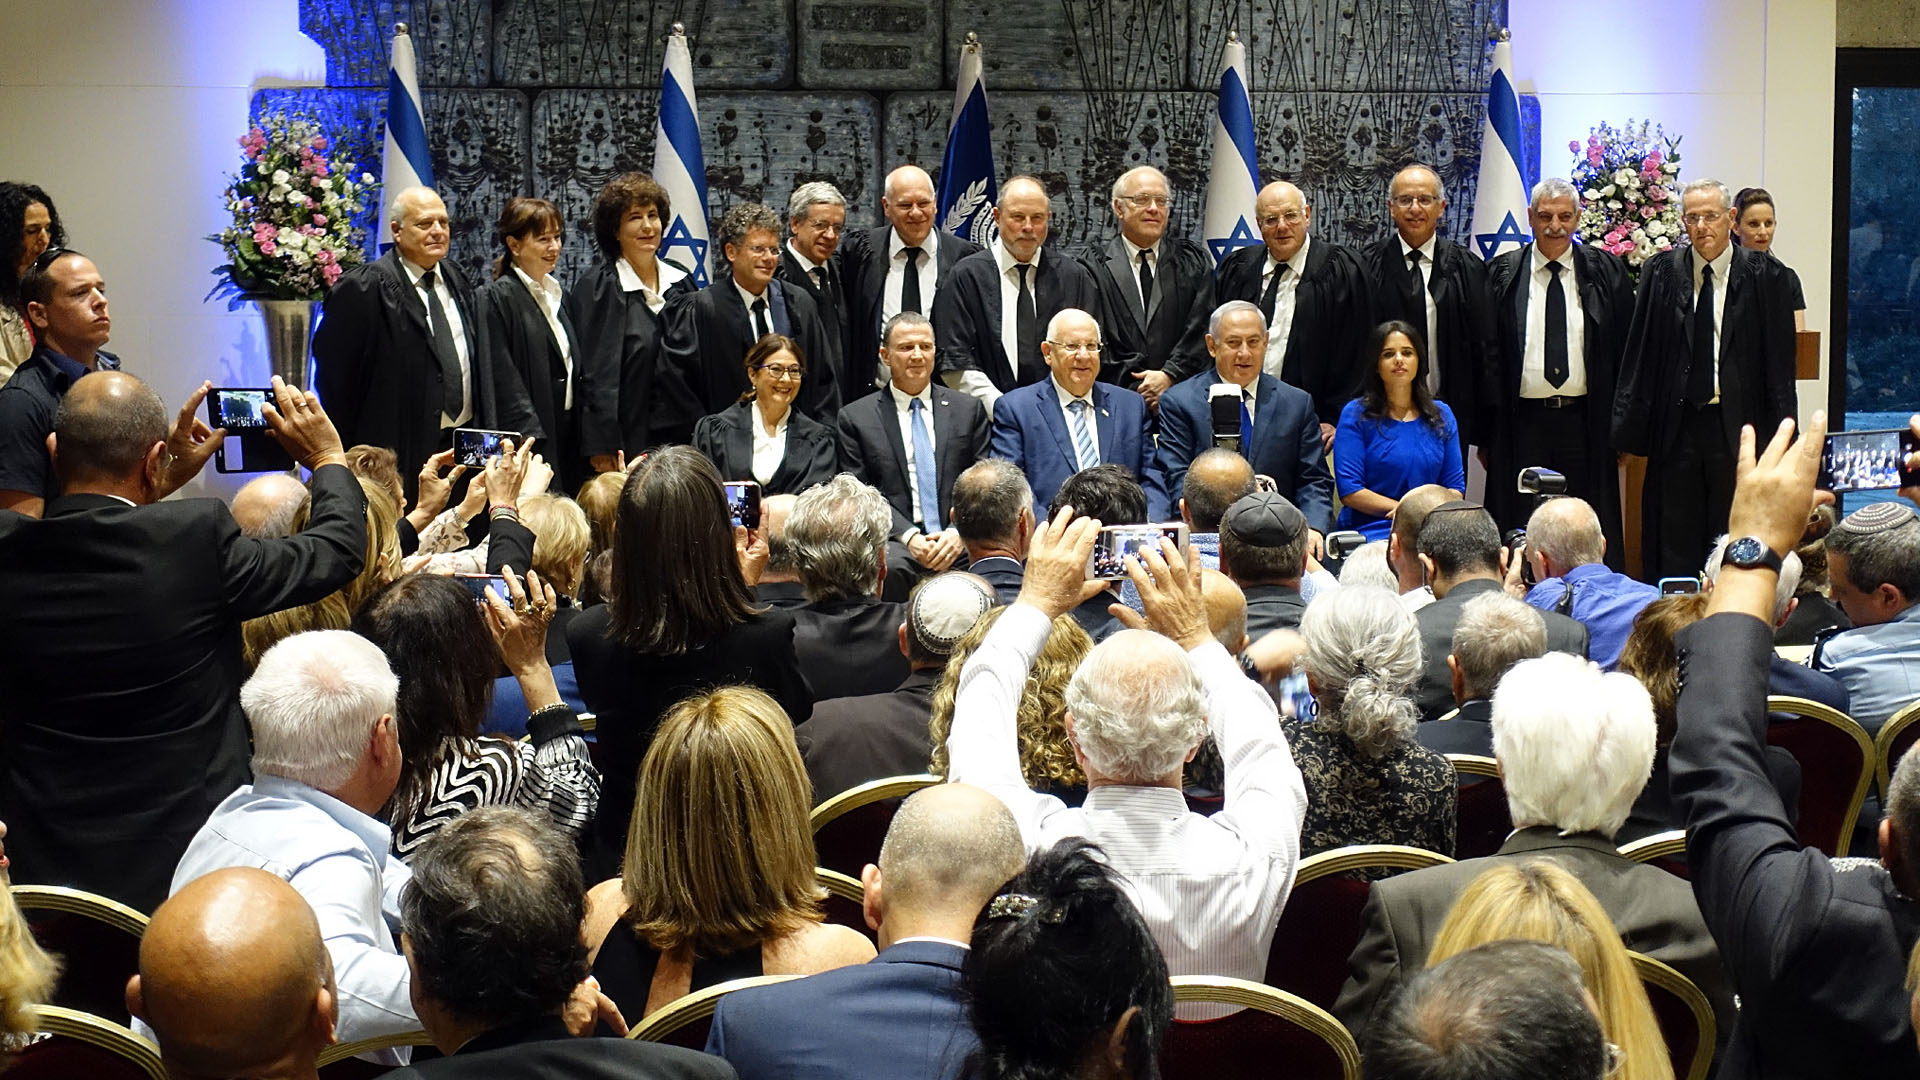 An der Zeremonie nahmen neben dem Präsidenten, Premierminister, der Justizministerin und dem Knessetsprecher auch die anderen Richter des Obersten Gerichtshofes teil